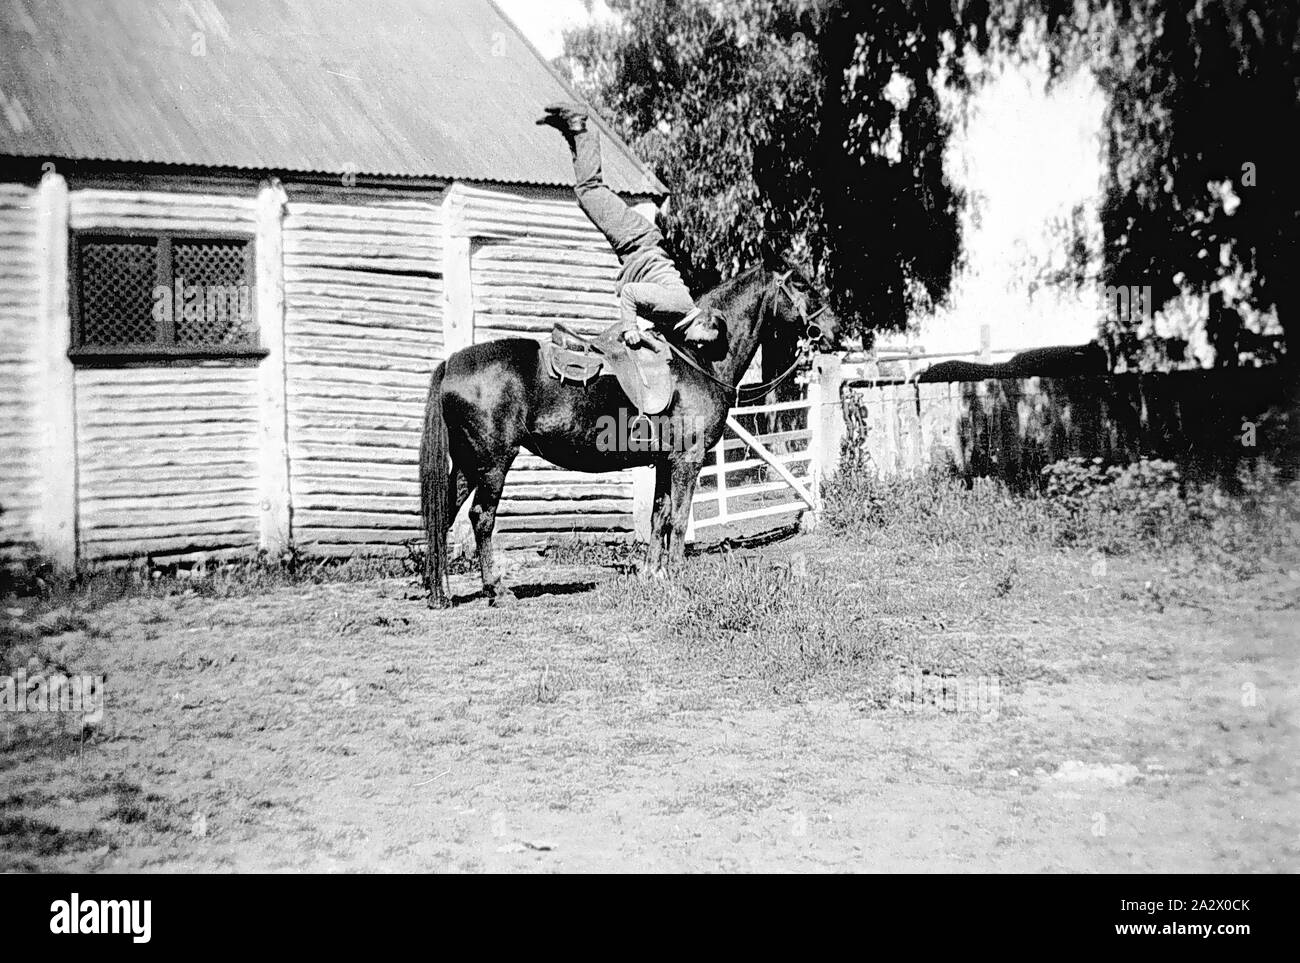 Négatif - Deniliquin District, New South Wales, 1932, un jackaroo faire un ATR sur son cheval. Dans l'arrière-plan sont les écuries sur 'Willurah' station. Ils sont construits à partir de billes avec un toit en tôle ondulée Banque D'Images